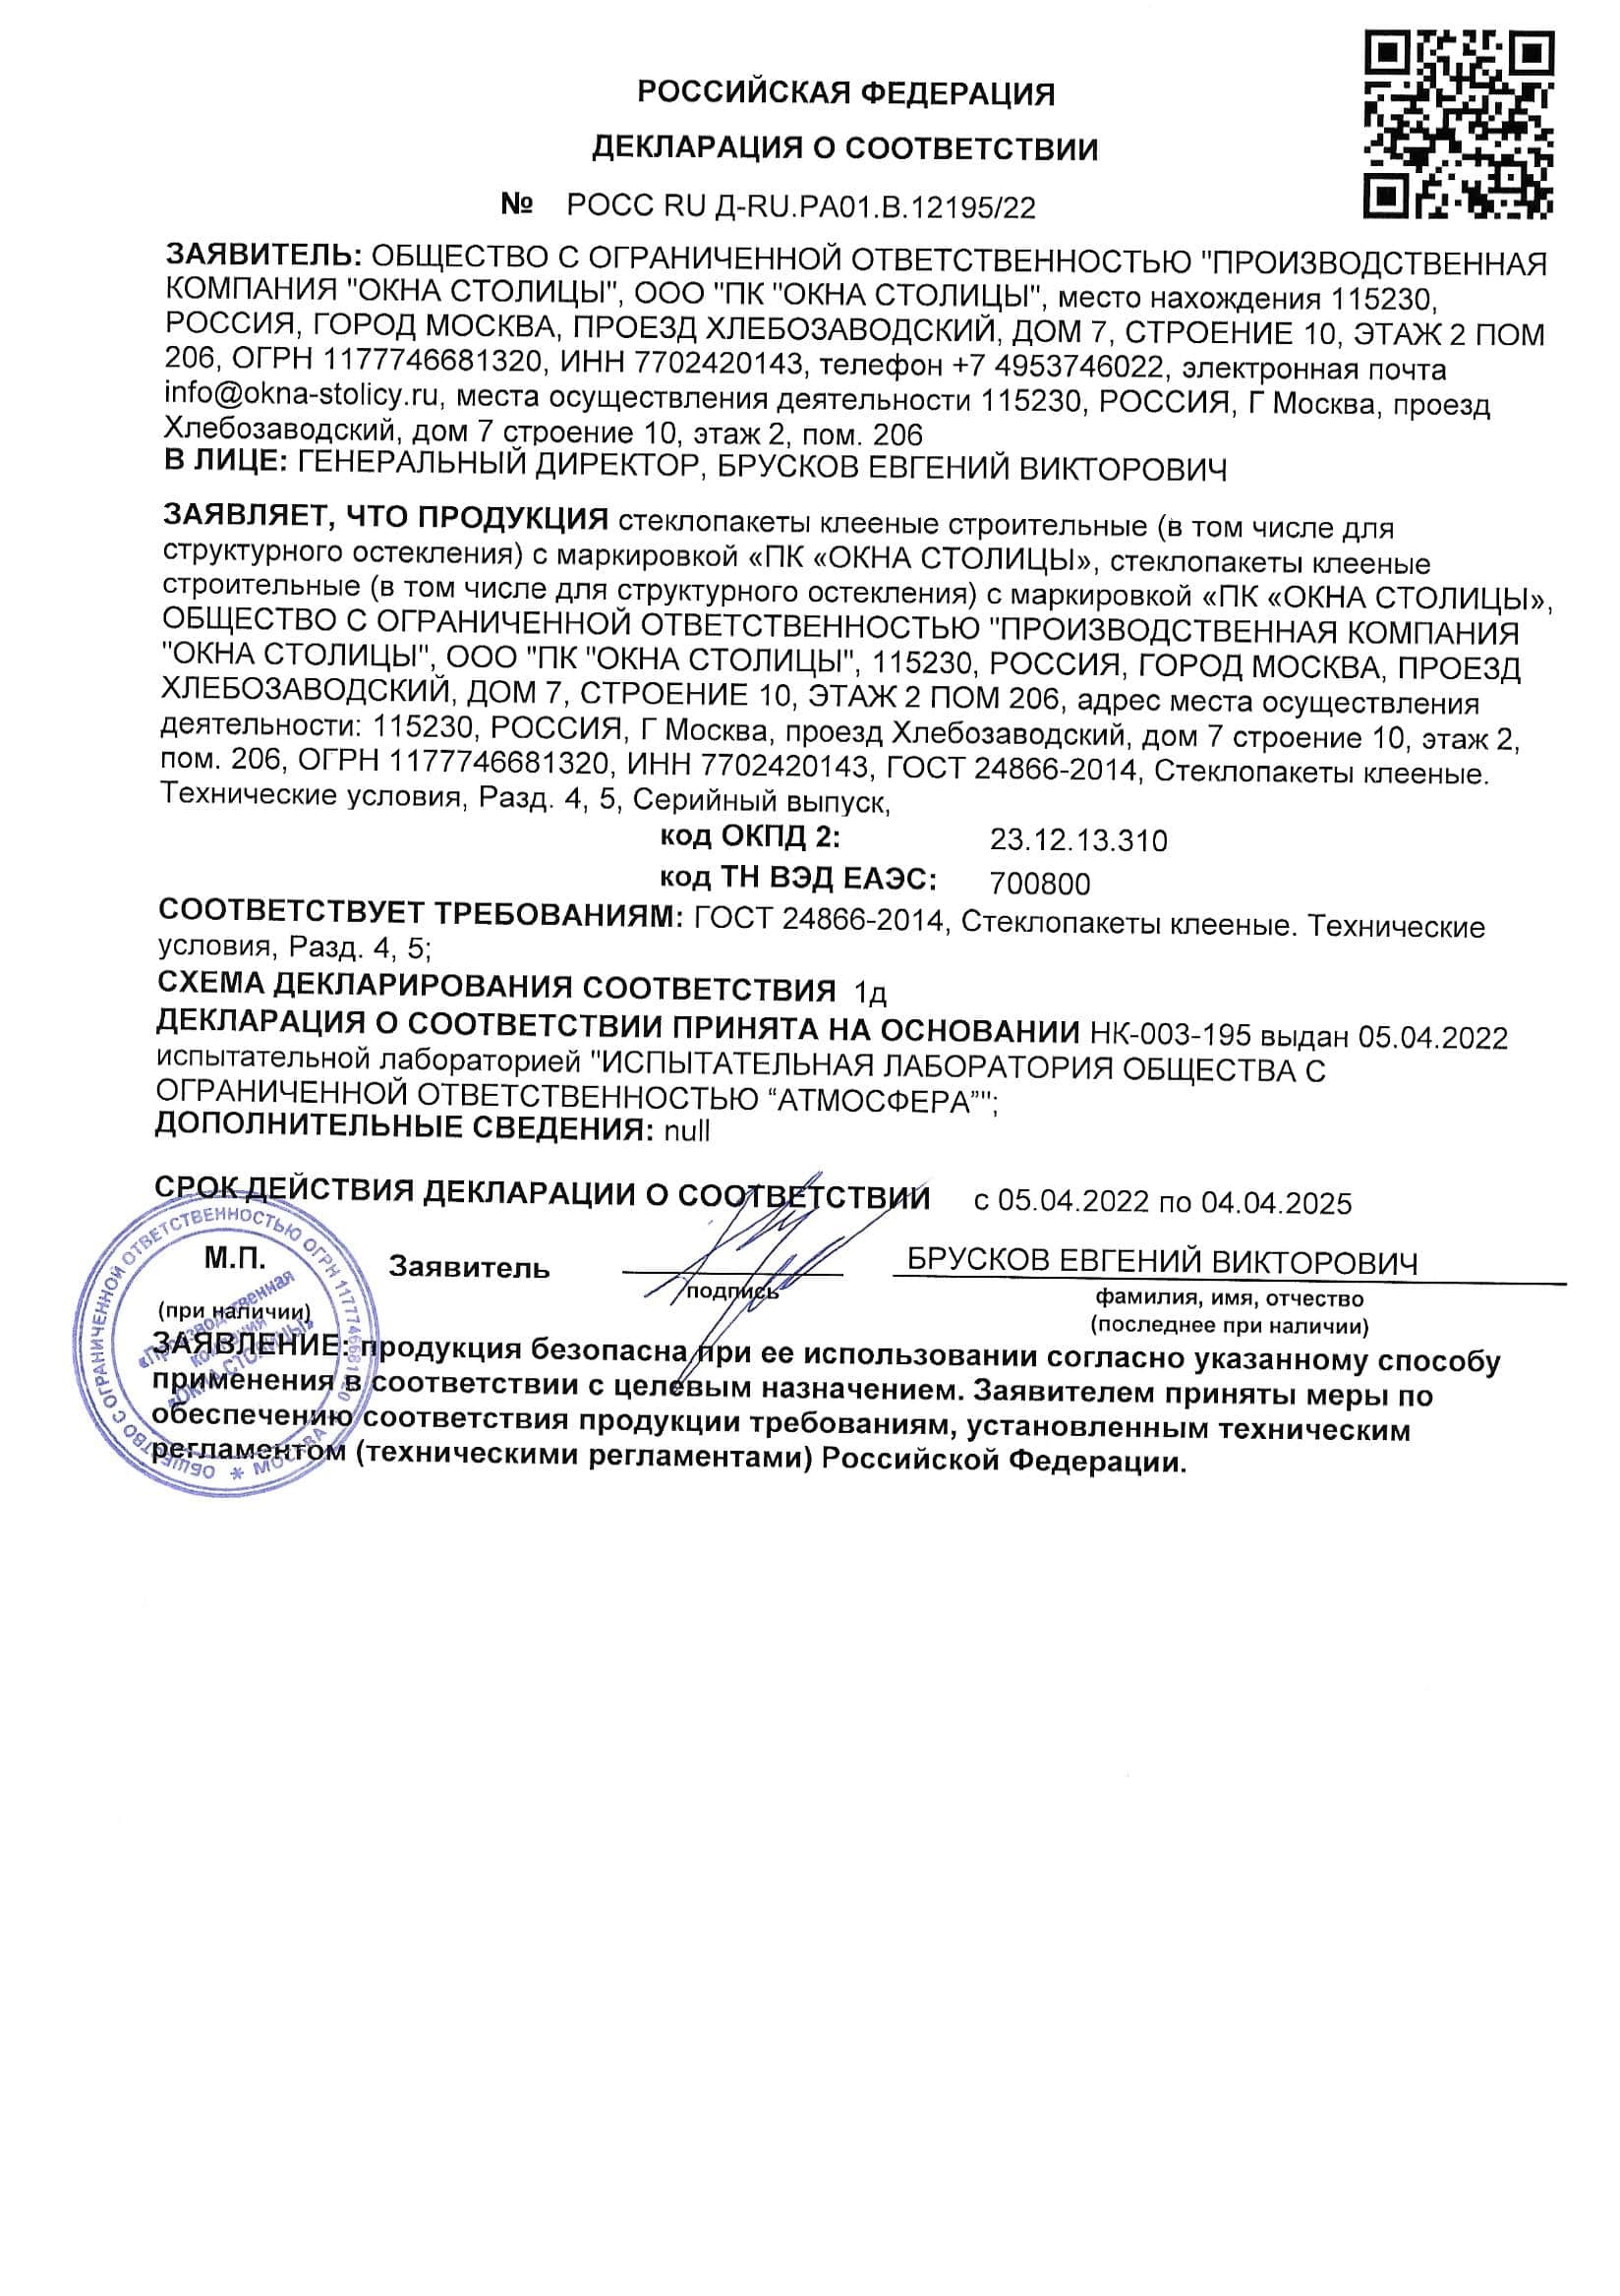 Декларация о соответствии стеклопакетов, 04.04.2025